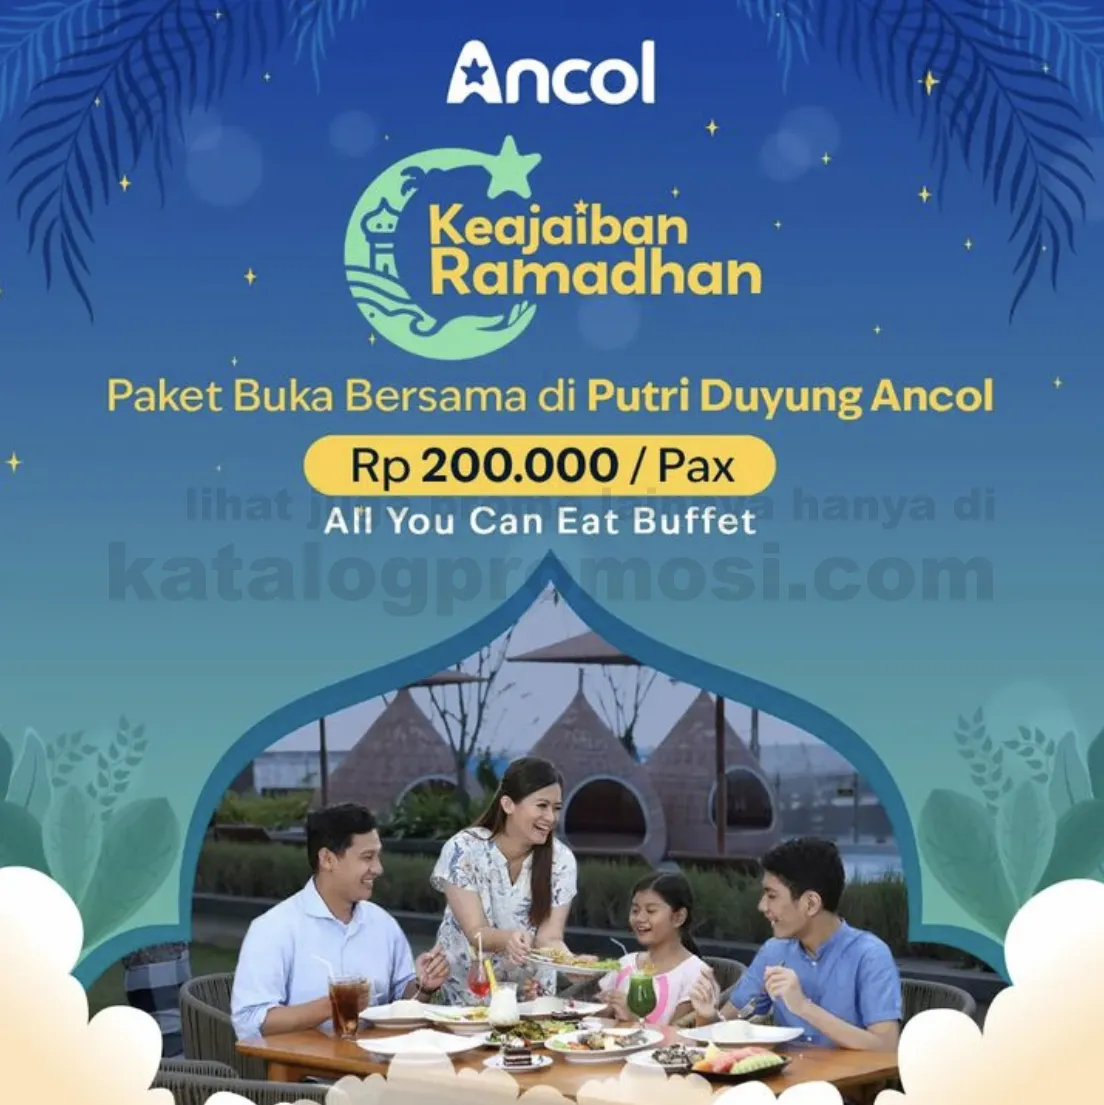 Promo ANCOL TAMAN IMPIAN - Paket Buka Bersama All You Can Eat di PUTRI DUYUNG cuma Rp. 200.000 per pax